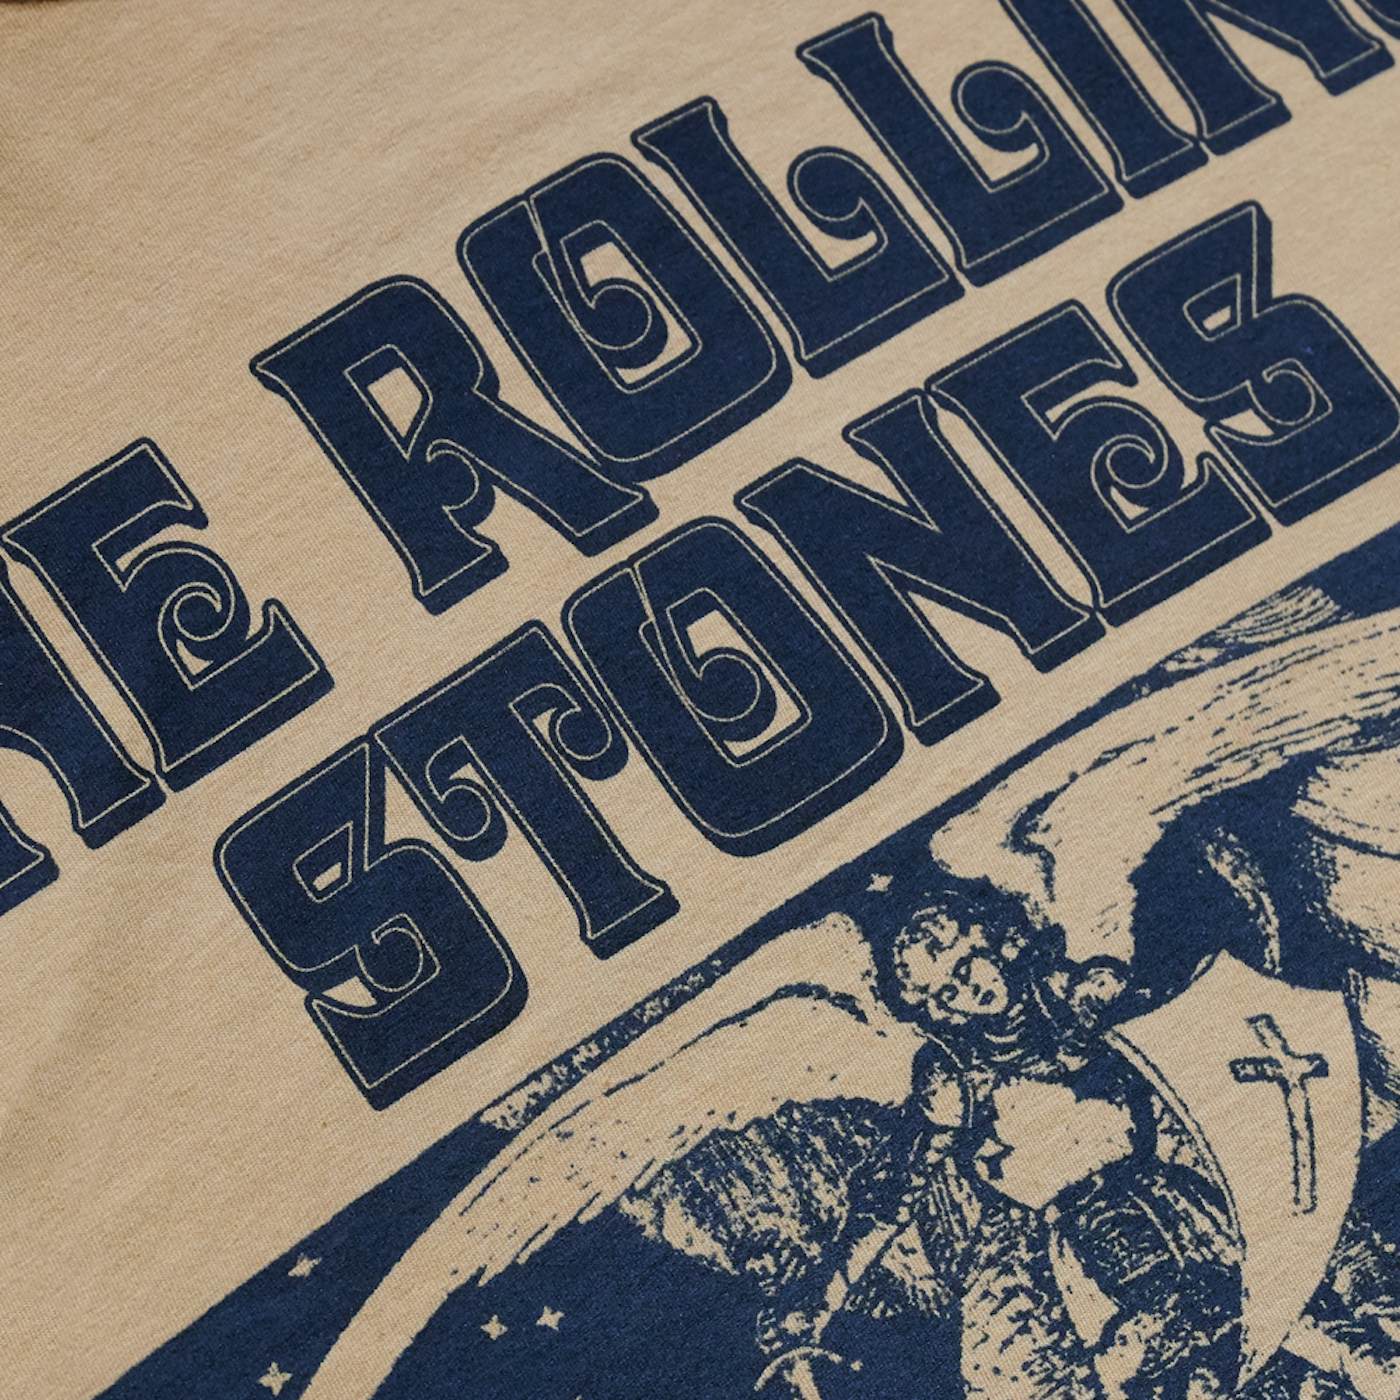 The Rolling Stones Vintage Birmingham '73 Tour T-Shirt